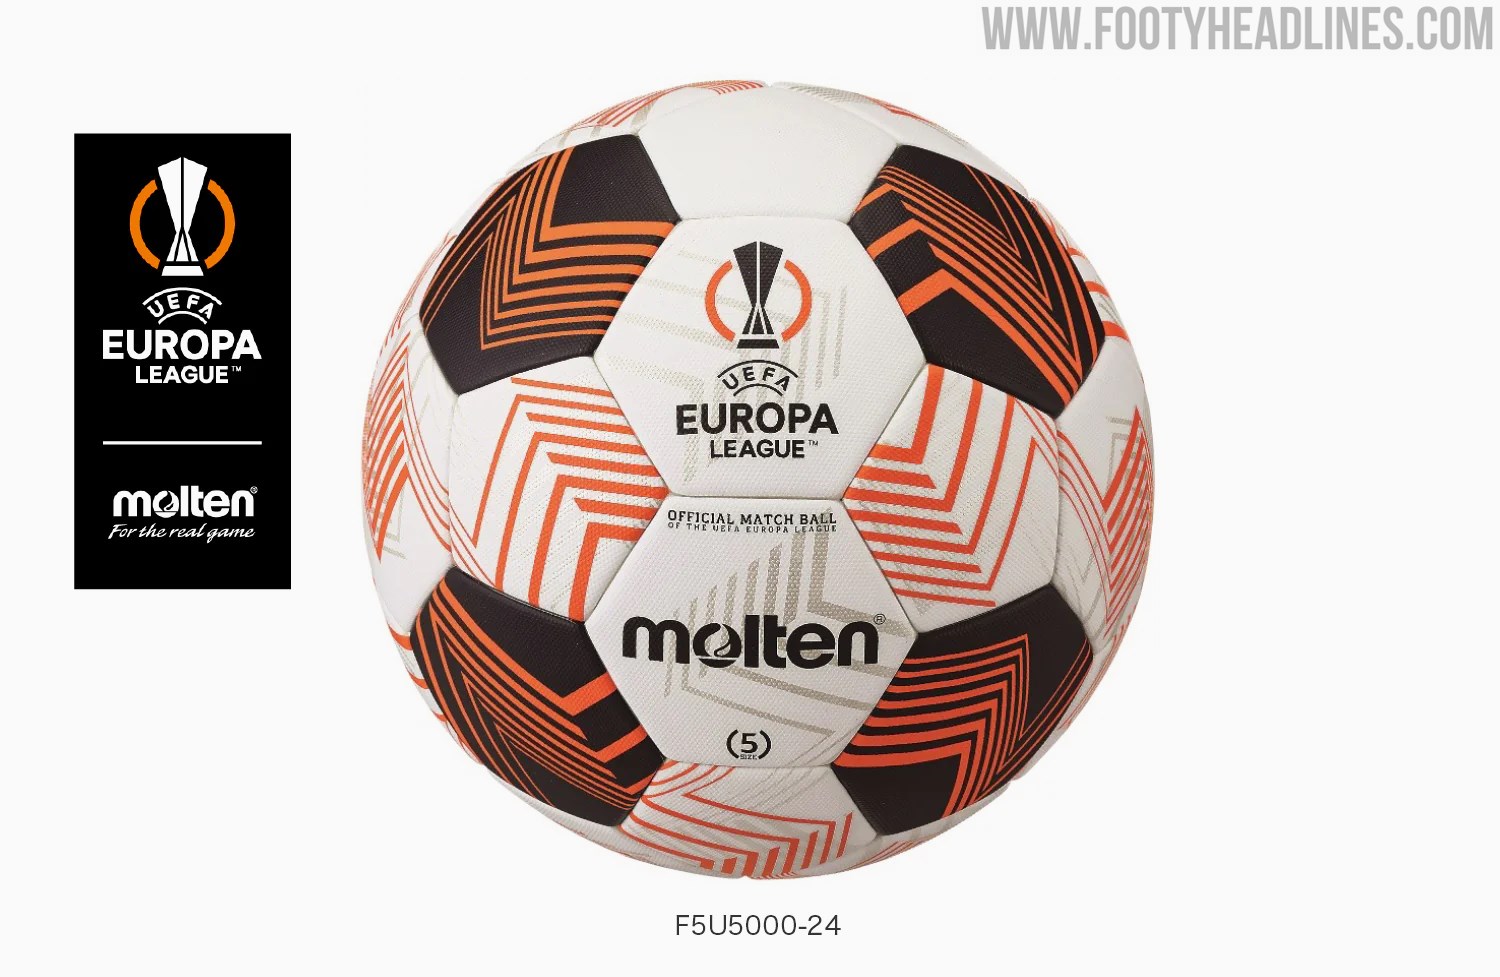 Molten 2023-24 Europa League Ball Released - Footy Headlines